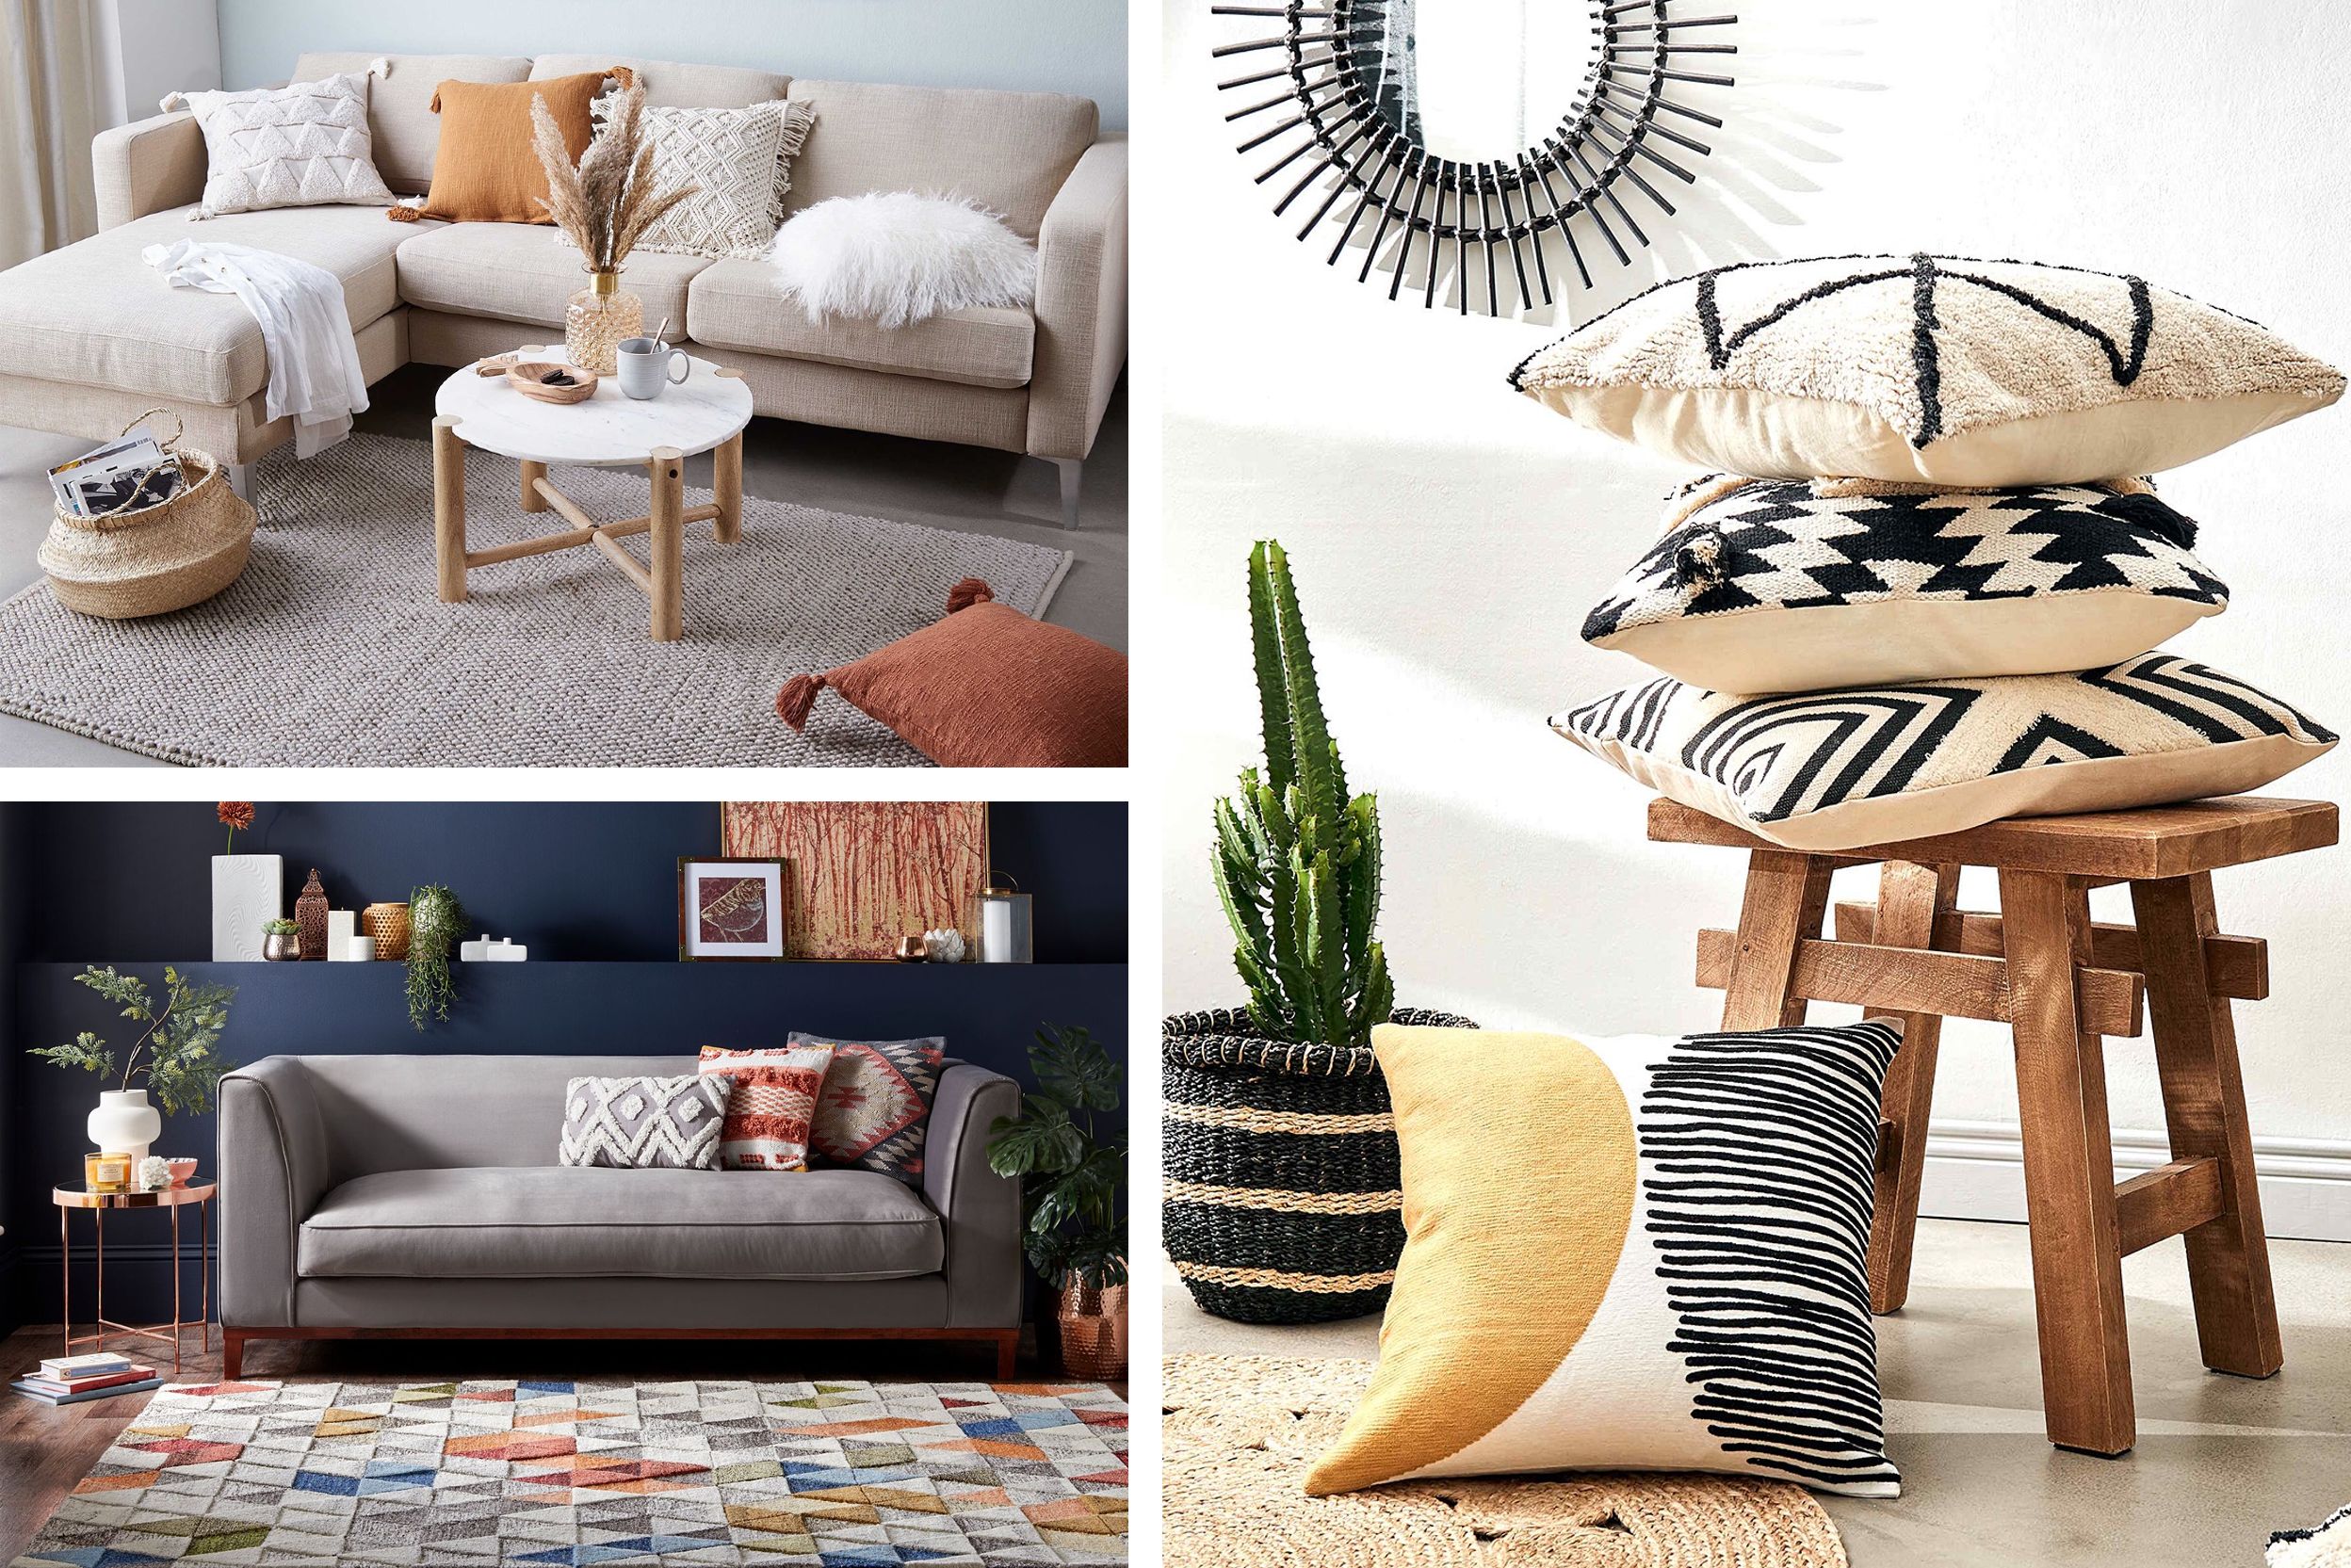 Gemütliche Teppiche, bunte Kissen und Textilien im Wohnzimmer